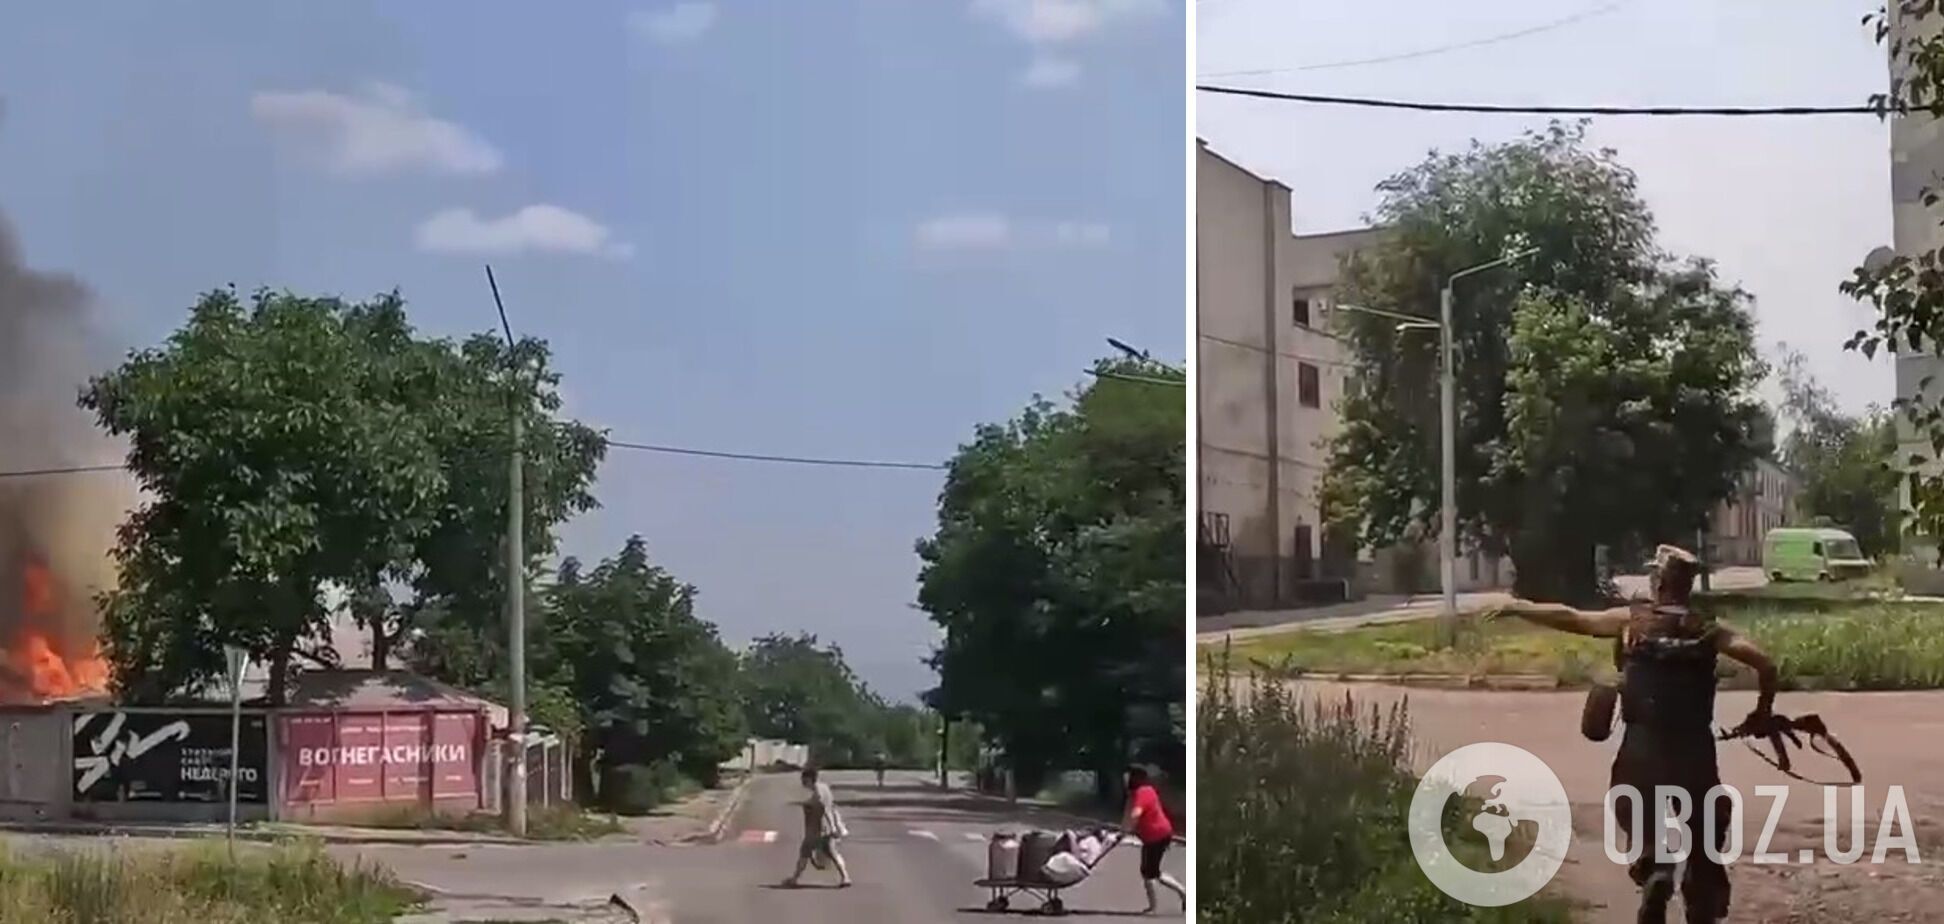 Украинские защитники при обстреле помогали людям эвакуироваться